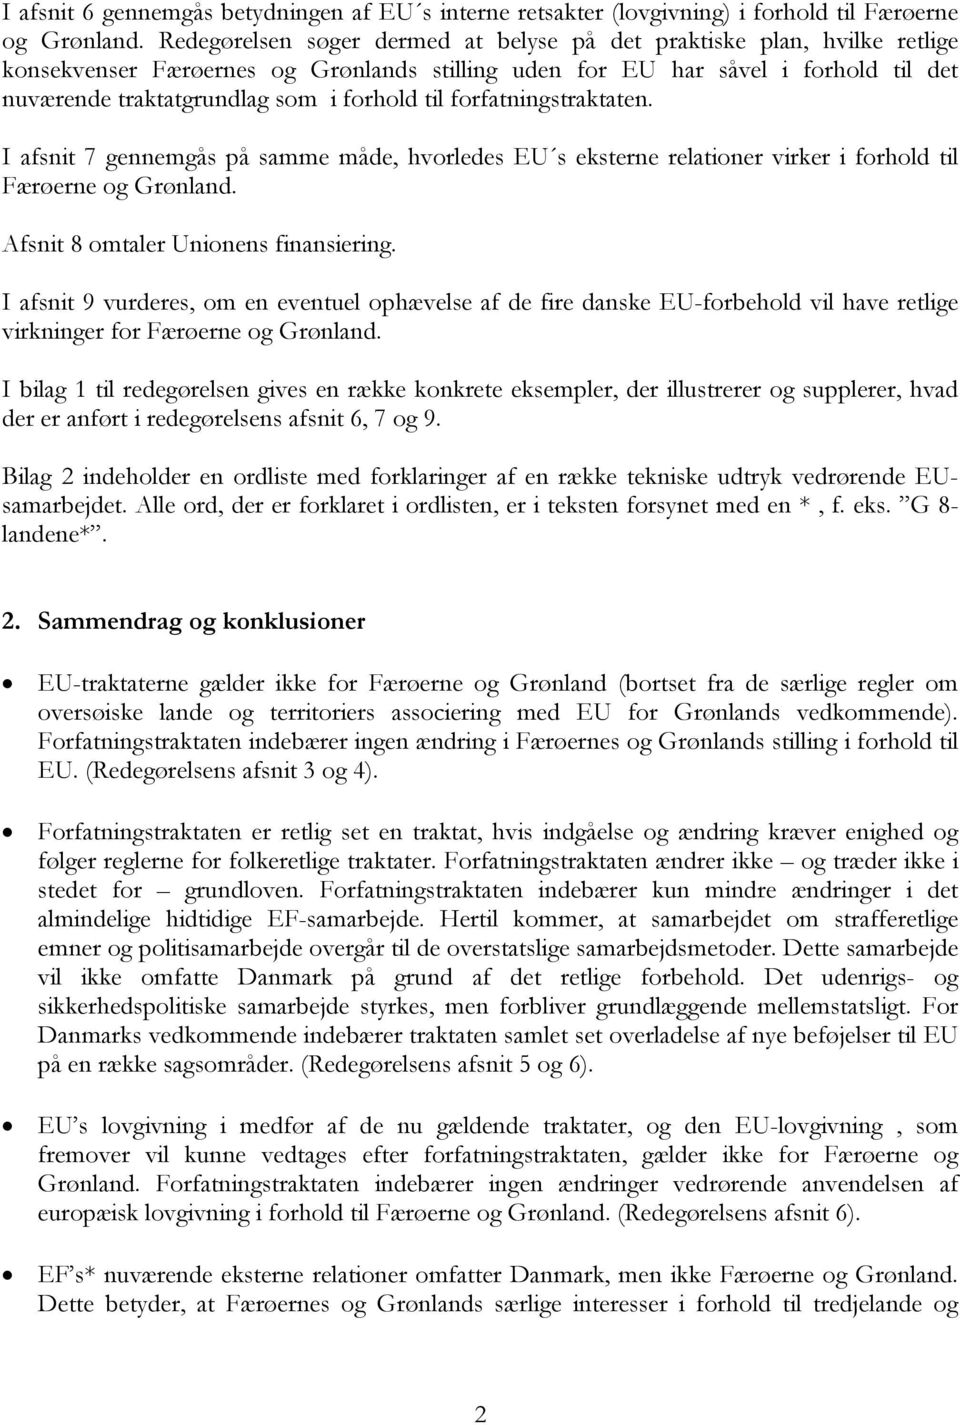 til forfatningstraktaten. I afsnit 7 gennemgås på samme måde, hvorledes EU s eksterne relationer virker i forhold til Færøerne og Grønland. Afsnit 8 omtaler Unionens finansiering.